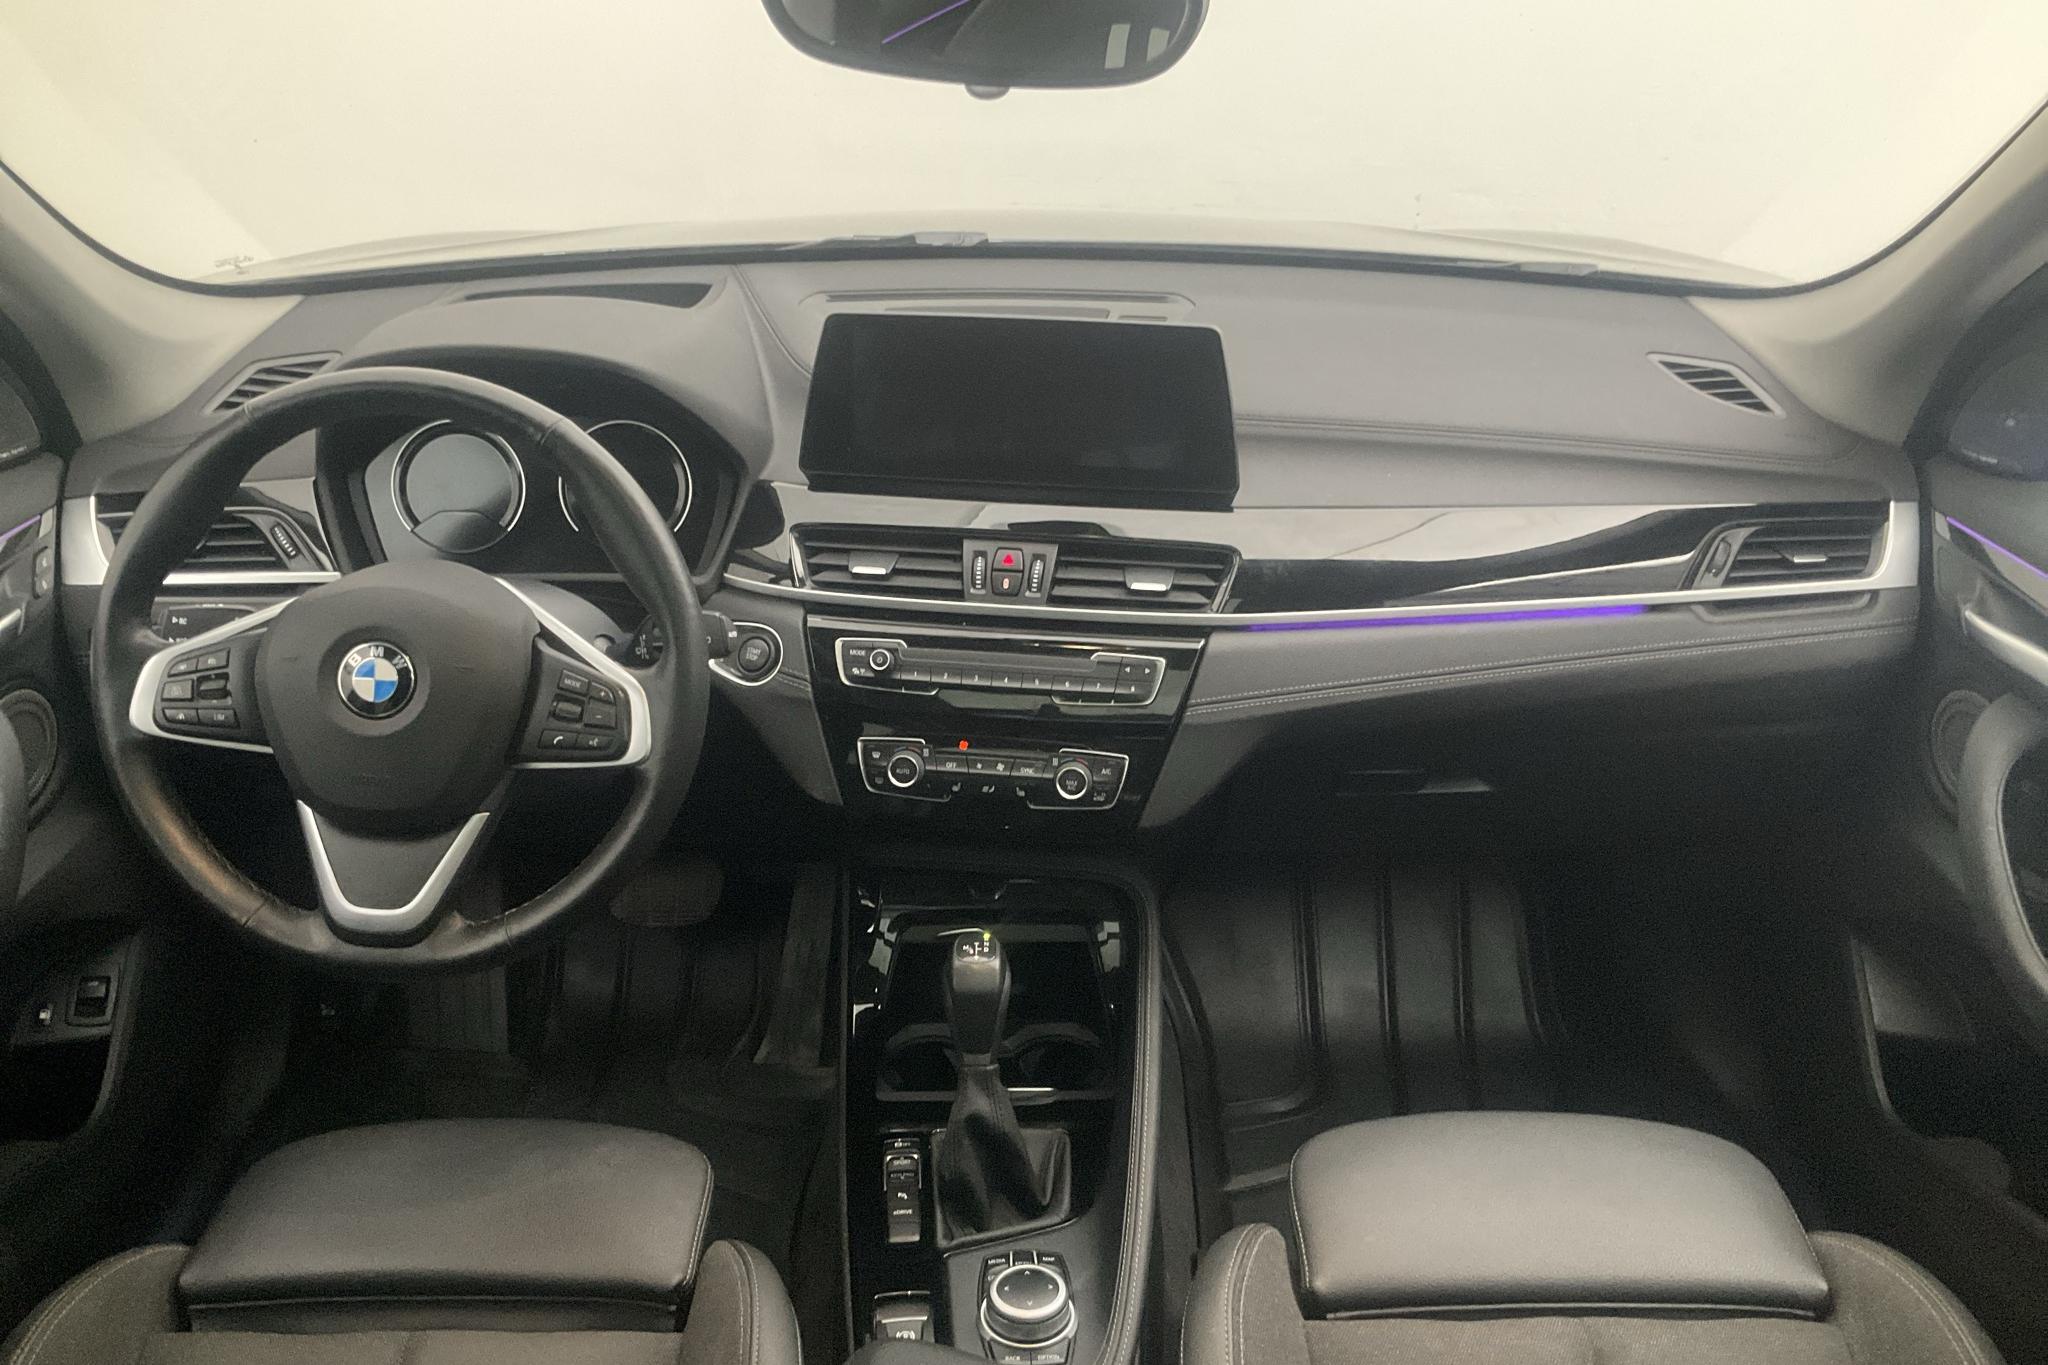 BMW X1 xDrive25e 9,7 kWh LCI, F48 (220hk) - 121 110 km - Automatic - brown - 2021